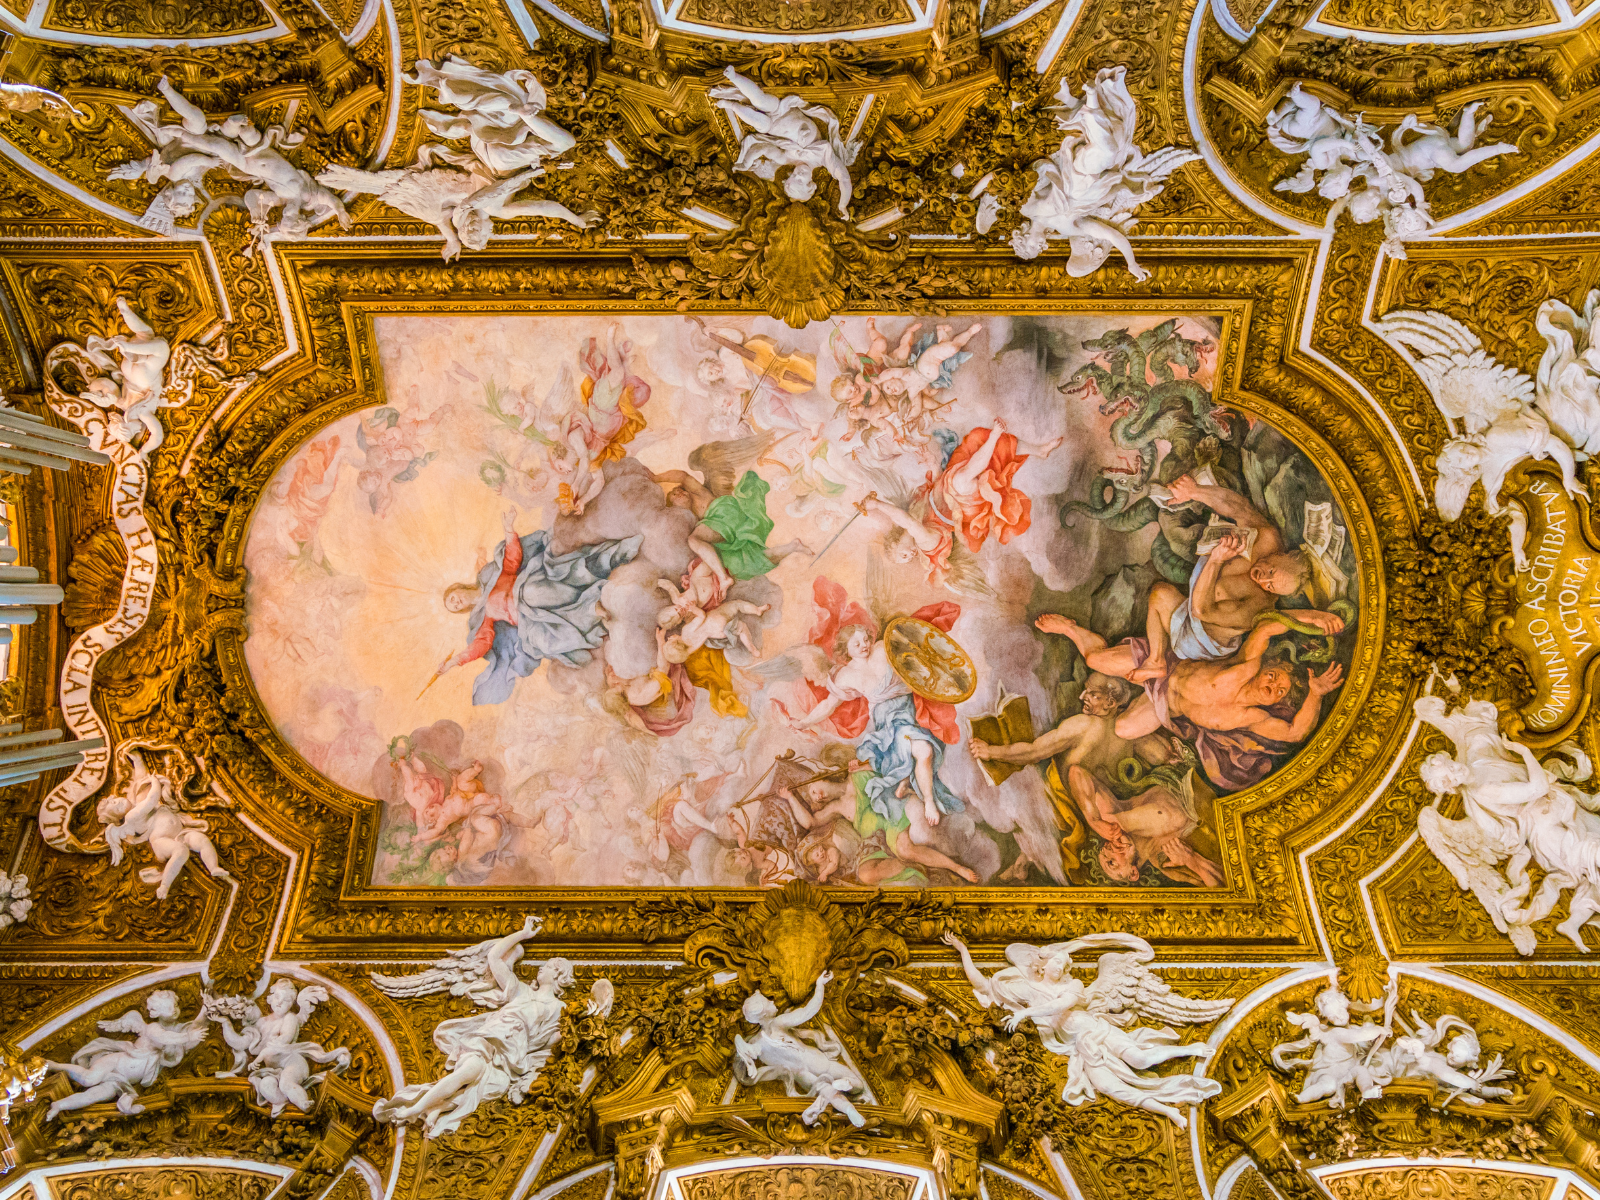 The frescoed ceiling of the church of Santa Maria della Vittoria